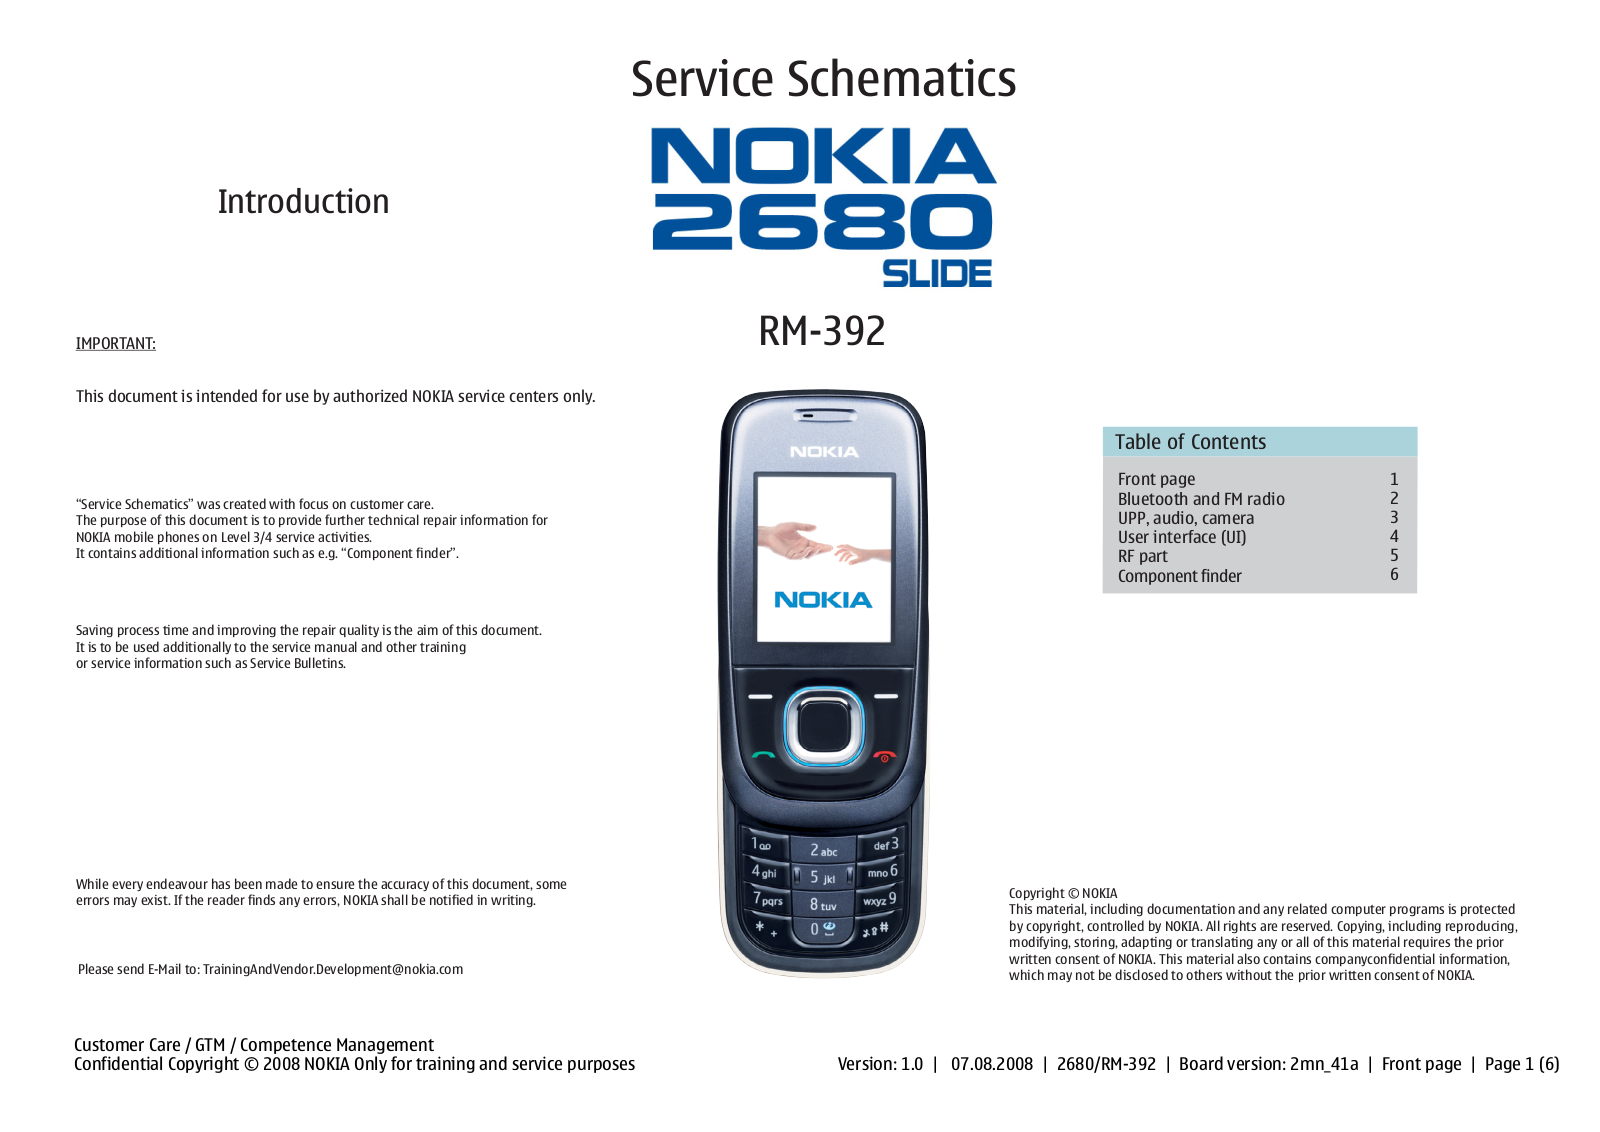 Nokia 2680 slide, RM392 Schema